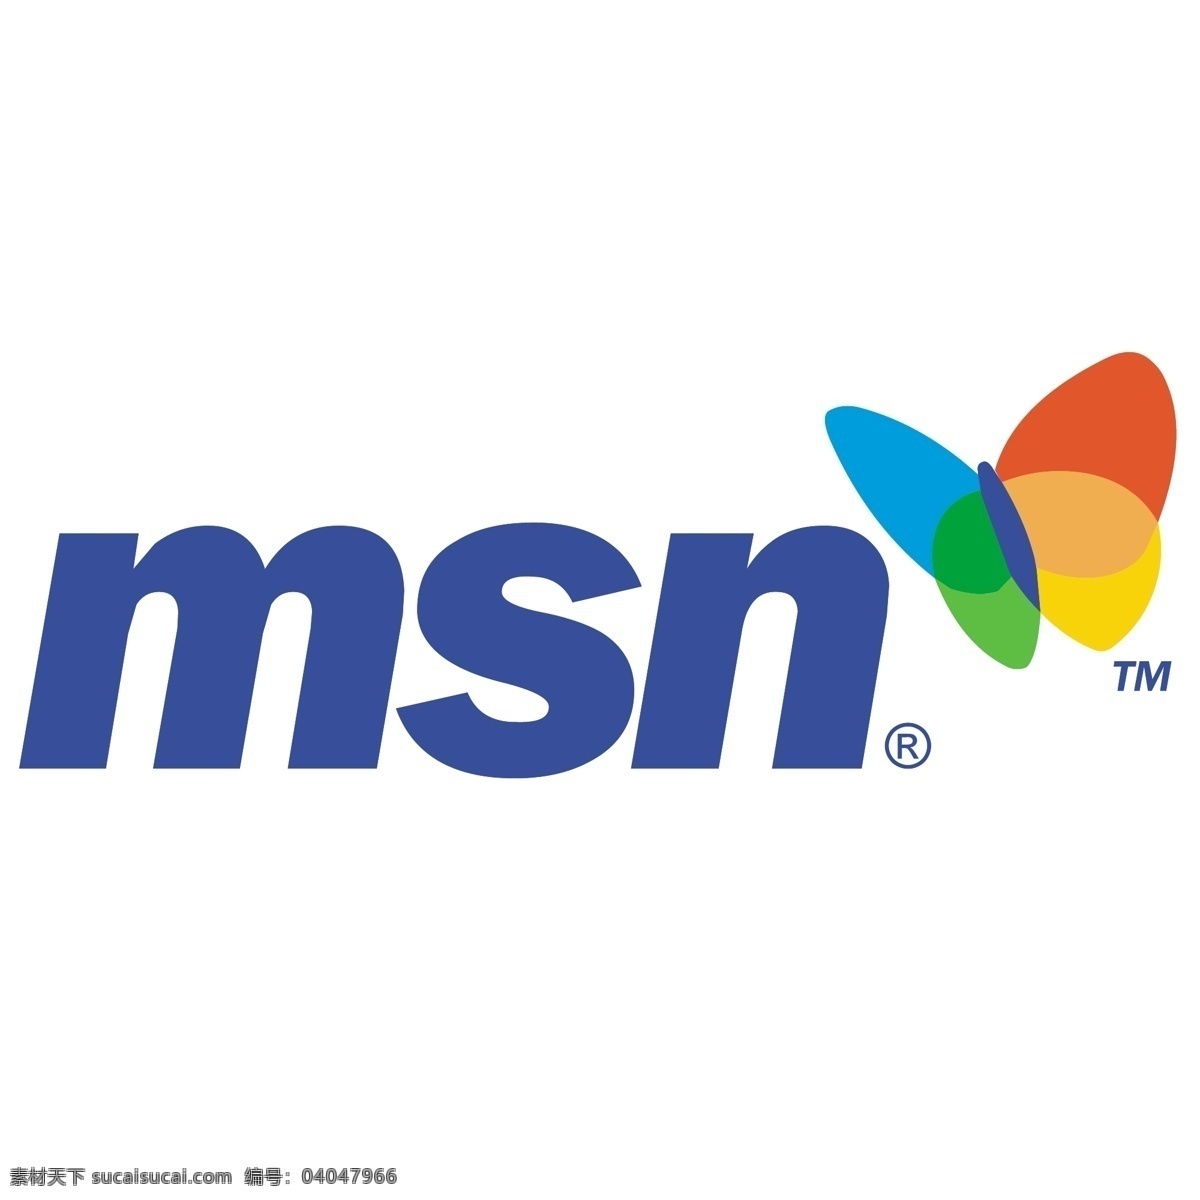 msn 标识 公司 免费 品牌 品牌标识 商标 矢量标志下载 免费矢量标识 矢量 psd源文件 logo设计